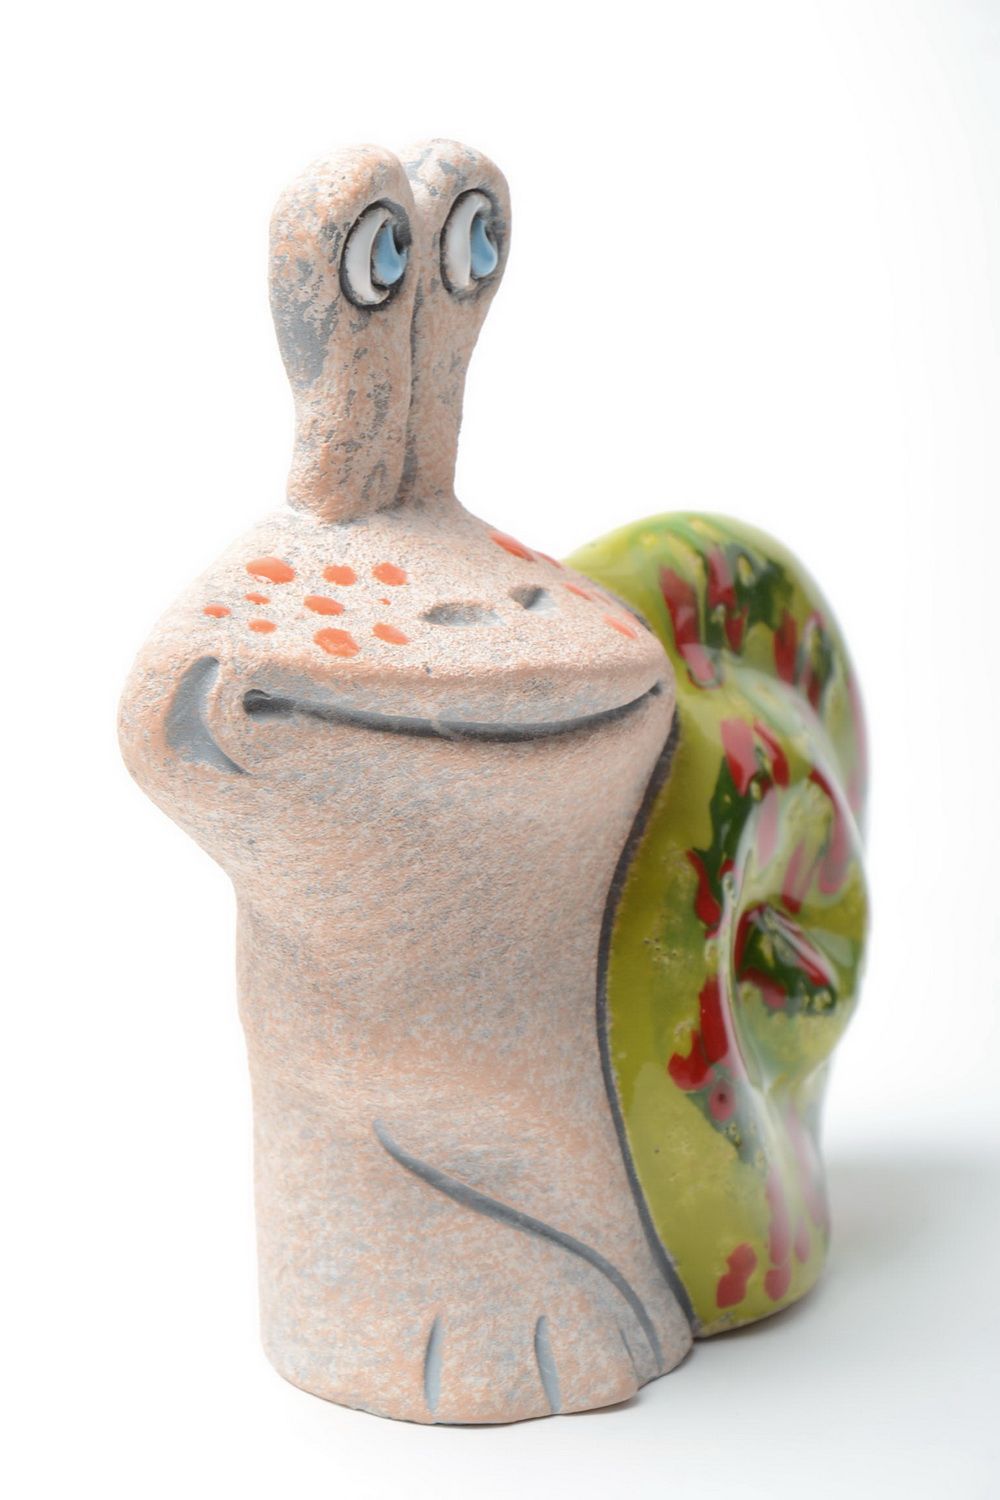 Salvadanaio in argilla fatto a mano figurina simpatica elemento decorativo foto 2